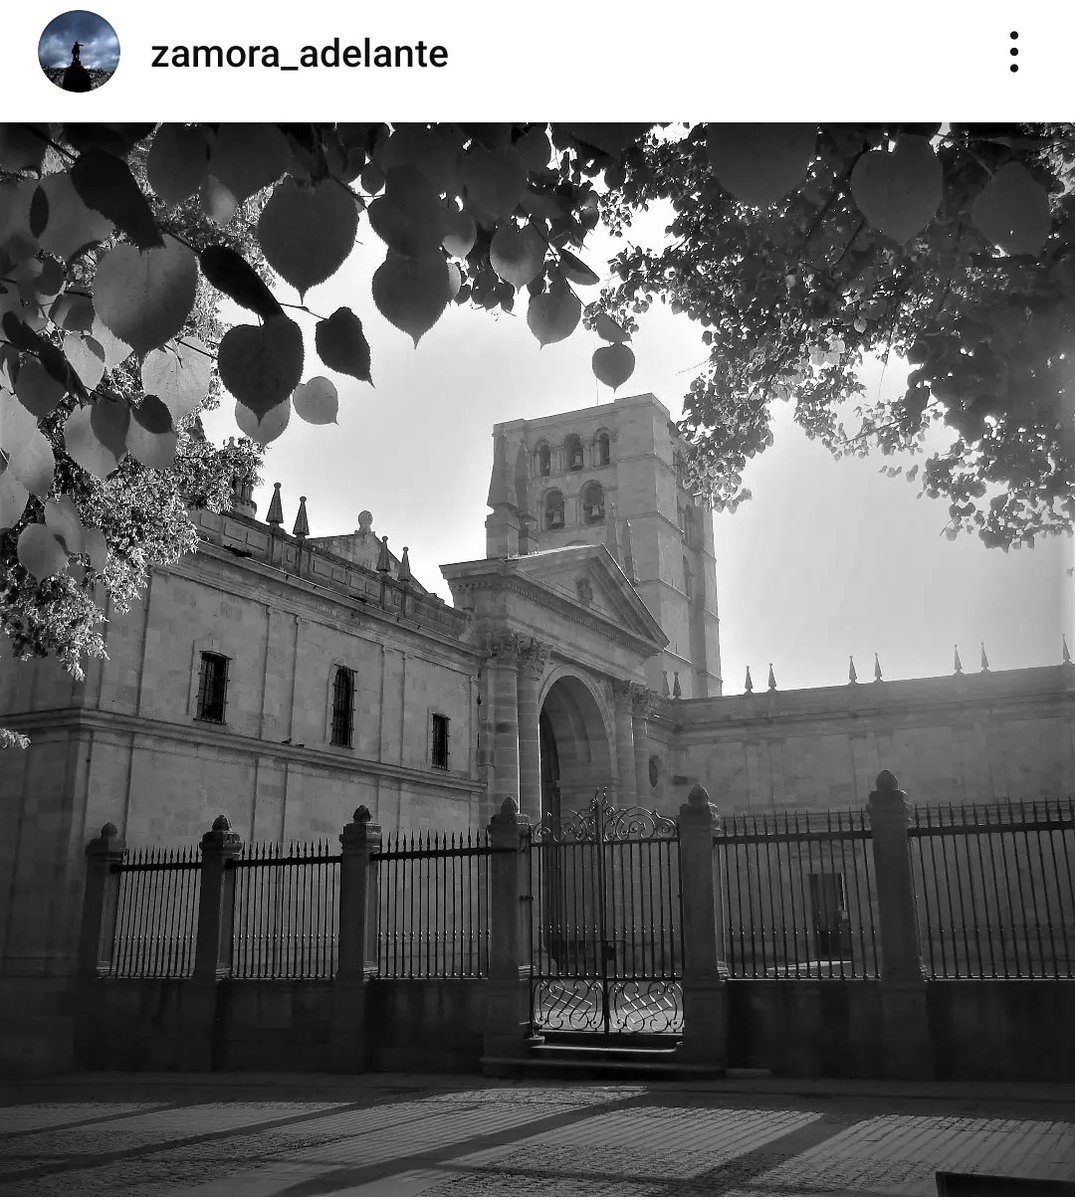 #catedralzamora #Zamora #zamoraenamora #zamoraciudad #zamoracapital #travelphotography #bnwlovers #bnwphotography #bnw_city #bnw #picoftheday #septiembre2023 #zamora2023 #picoftheweek #Zamora_Adelante #大聖堂